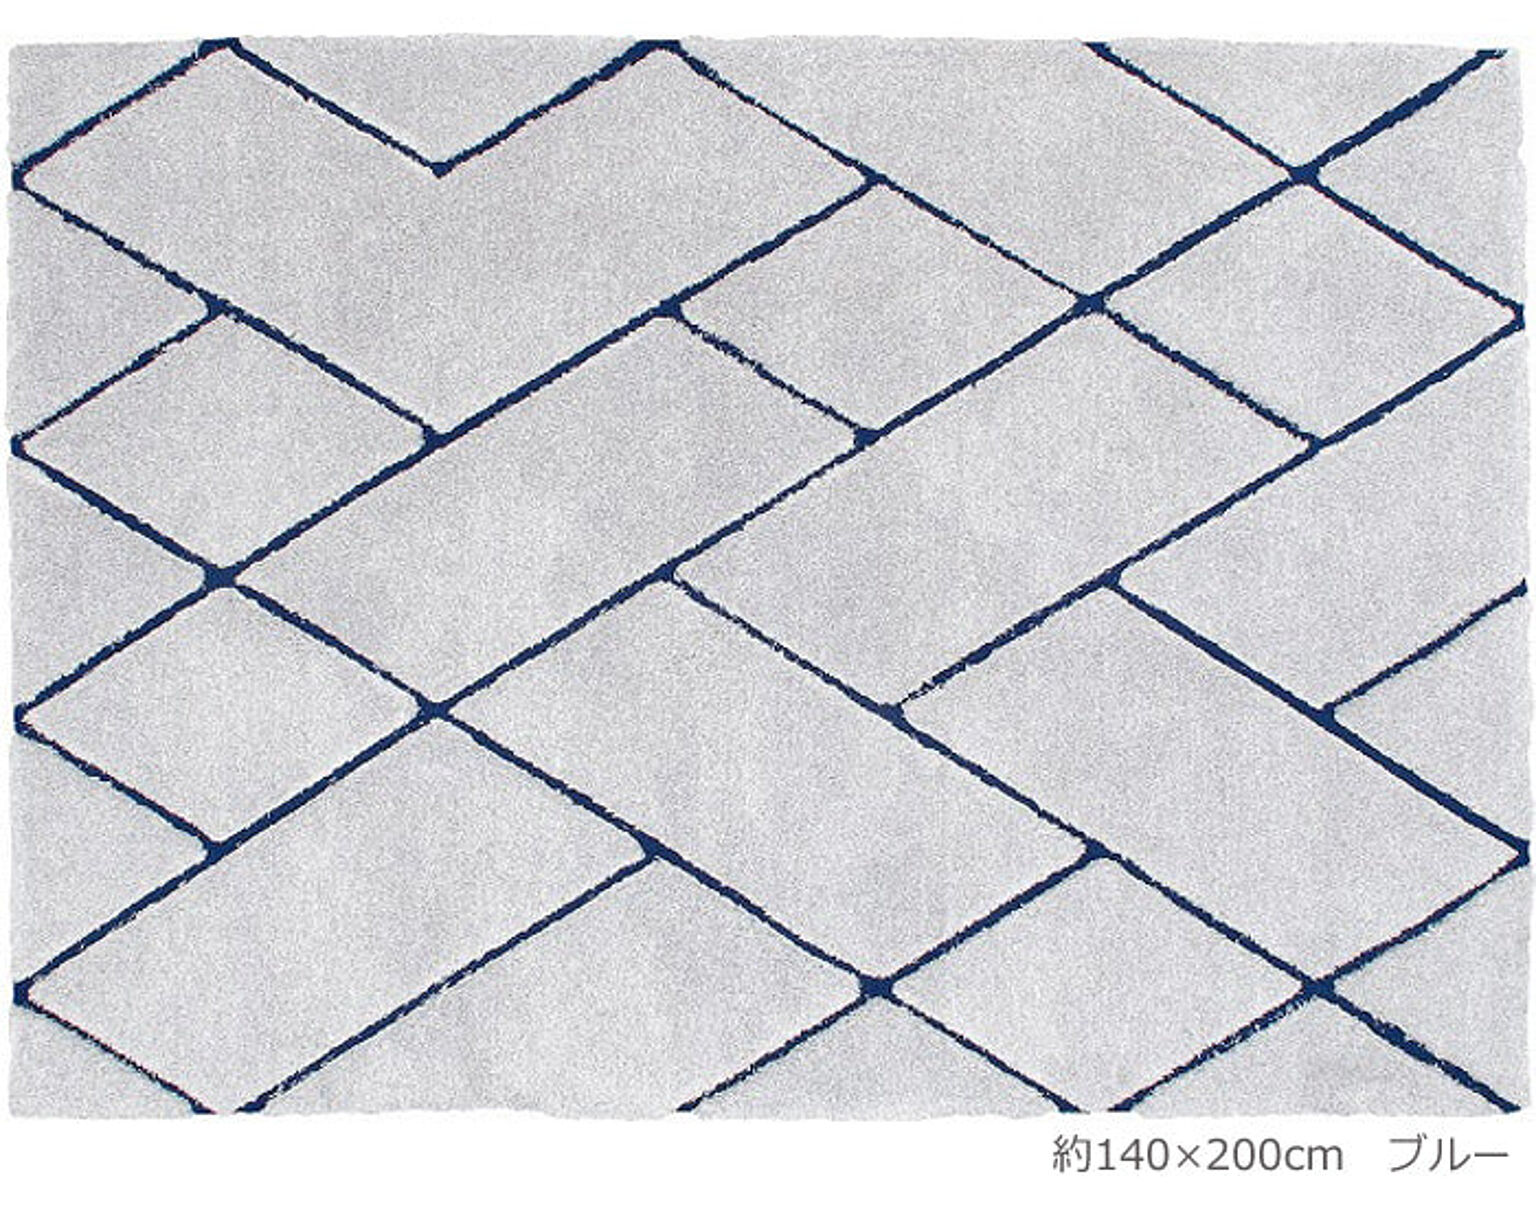 ラグ ラグマット ソフトタッチ マイクロファイバー 絨毯 prevell プレーベル ルノン 約200×250cm ふかふか ボリュームたっぷり 遊び毛防止 ホットカーペット対応 引っ越し 新生活